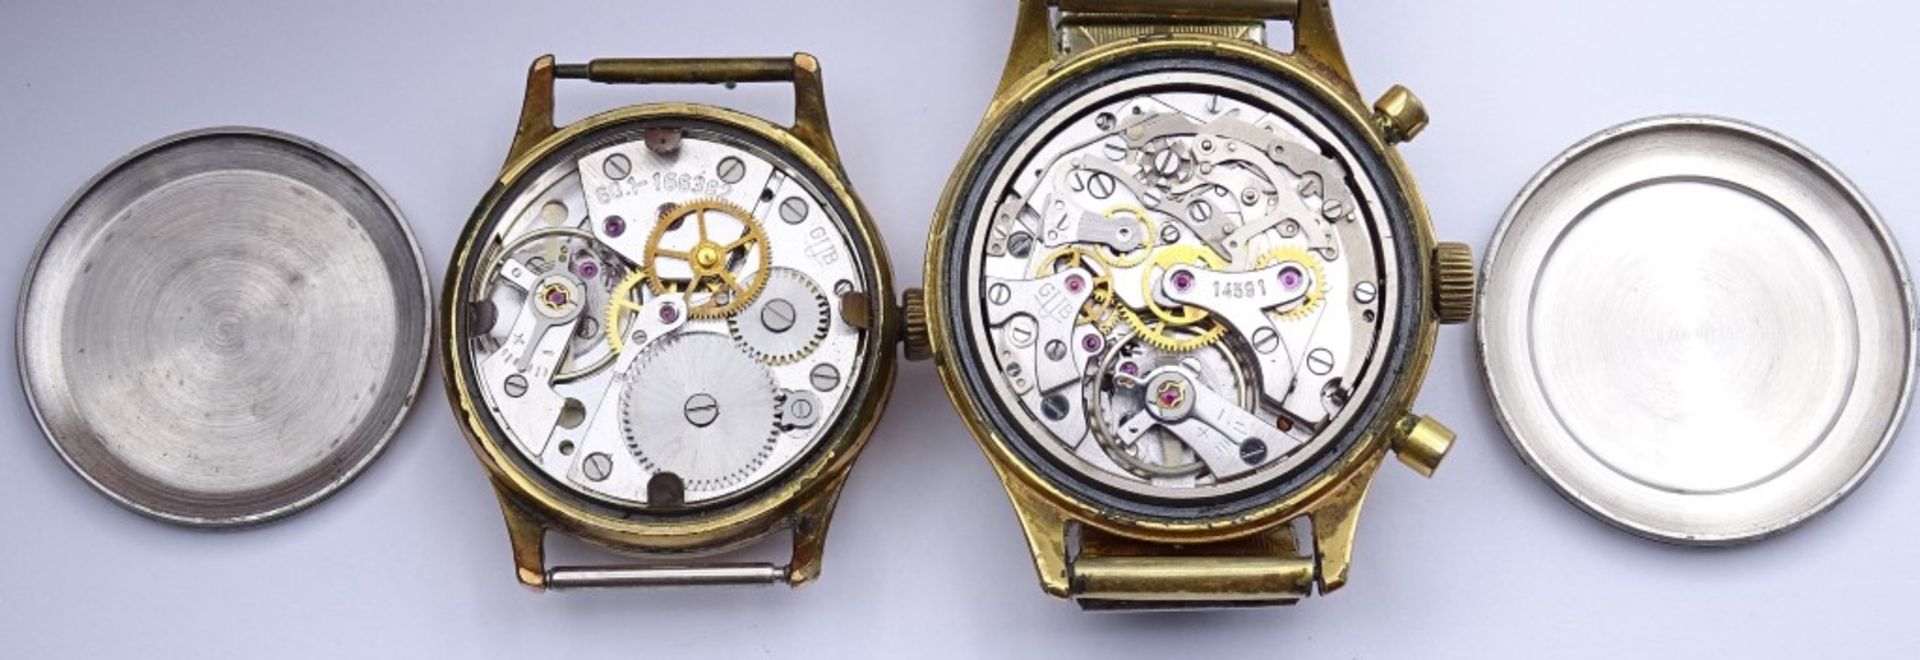 Zwei Armbanduhren "GUB",beide mechanisch,Werke laufen,vergoldet,Alters-u. Gebrauchsspuren, d-33- - Bild 4 aus 9